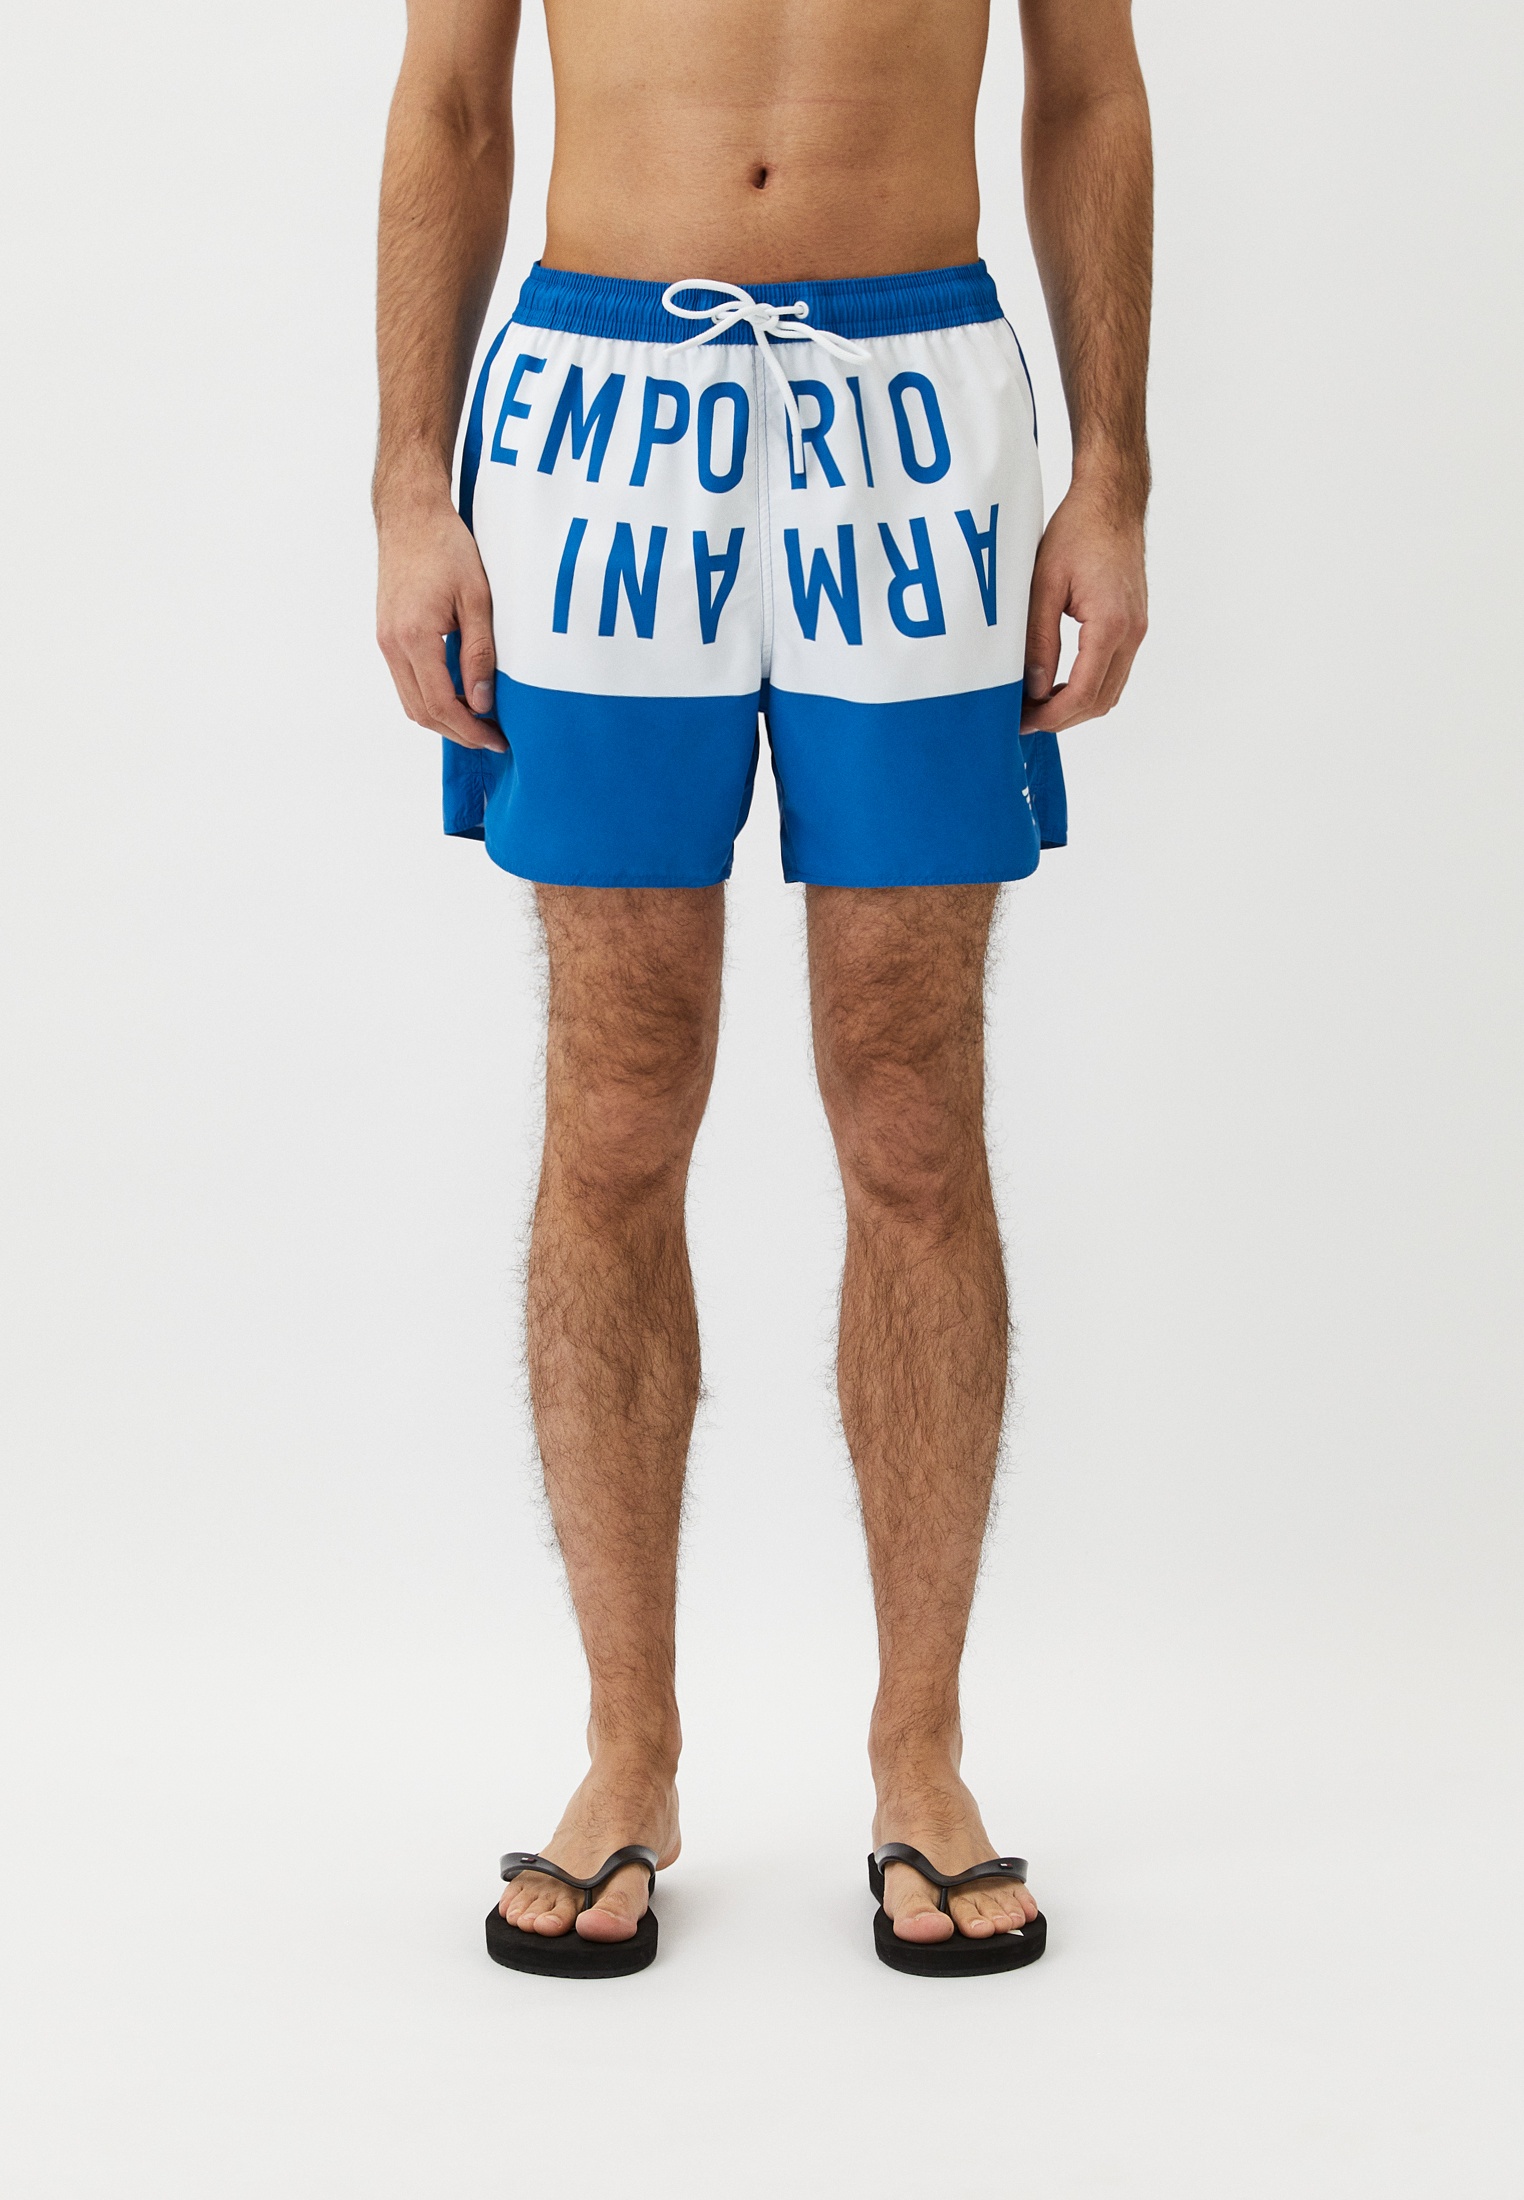 Мужские шорты для плавания Emporio Armani (Эмпорио Армани) 211740 4R424: изображение 1